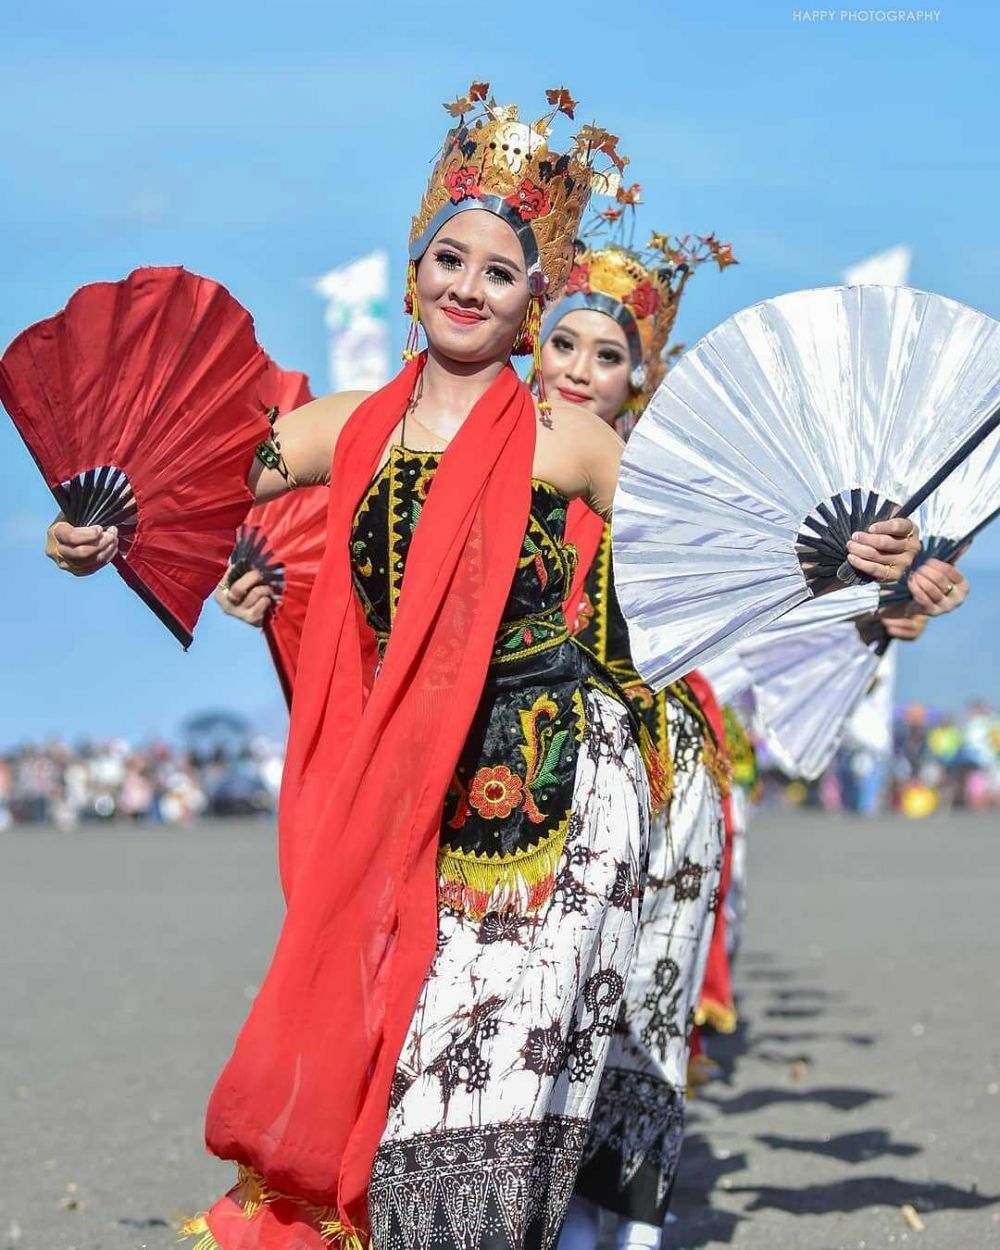 Sejarah dan Pertunjukan Tari Gandrung Lombok yang Memukau